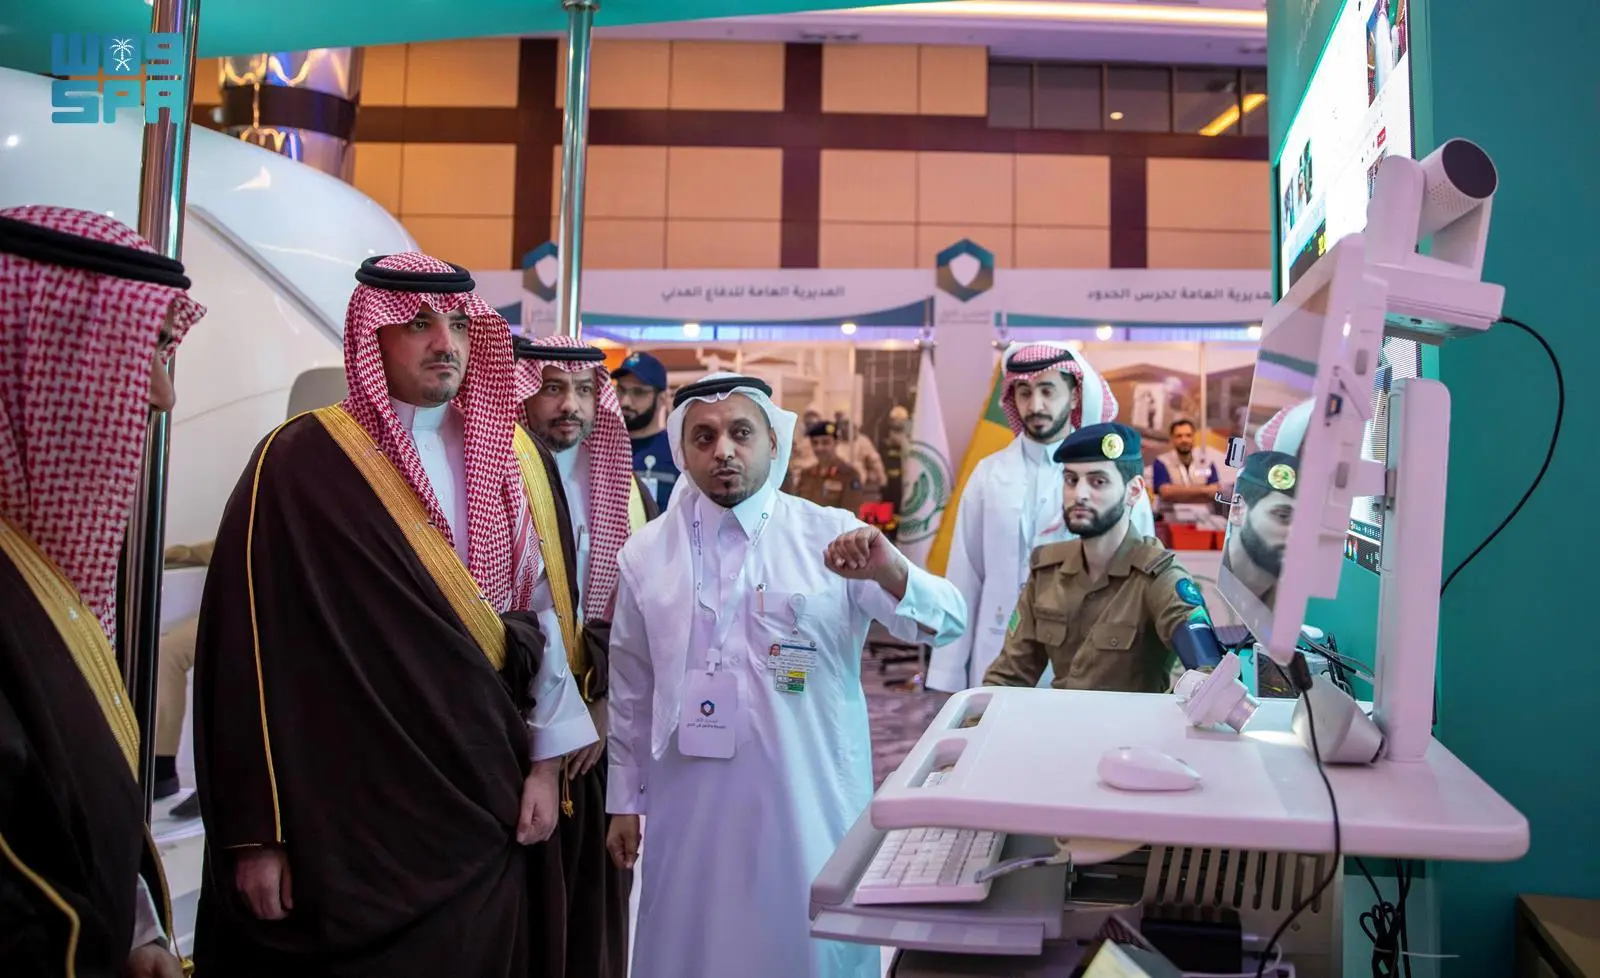 الأمير عبدالعزيز بن سعود يرعى الحفل الختامي للمنتدى الأول للصحة والأمن في الحج الذي تنظمه الإدارة العامة للخدمات الطبية بوزارة الداخلية